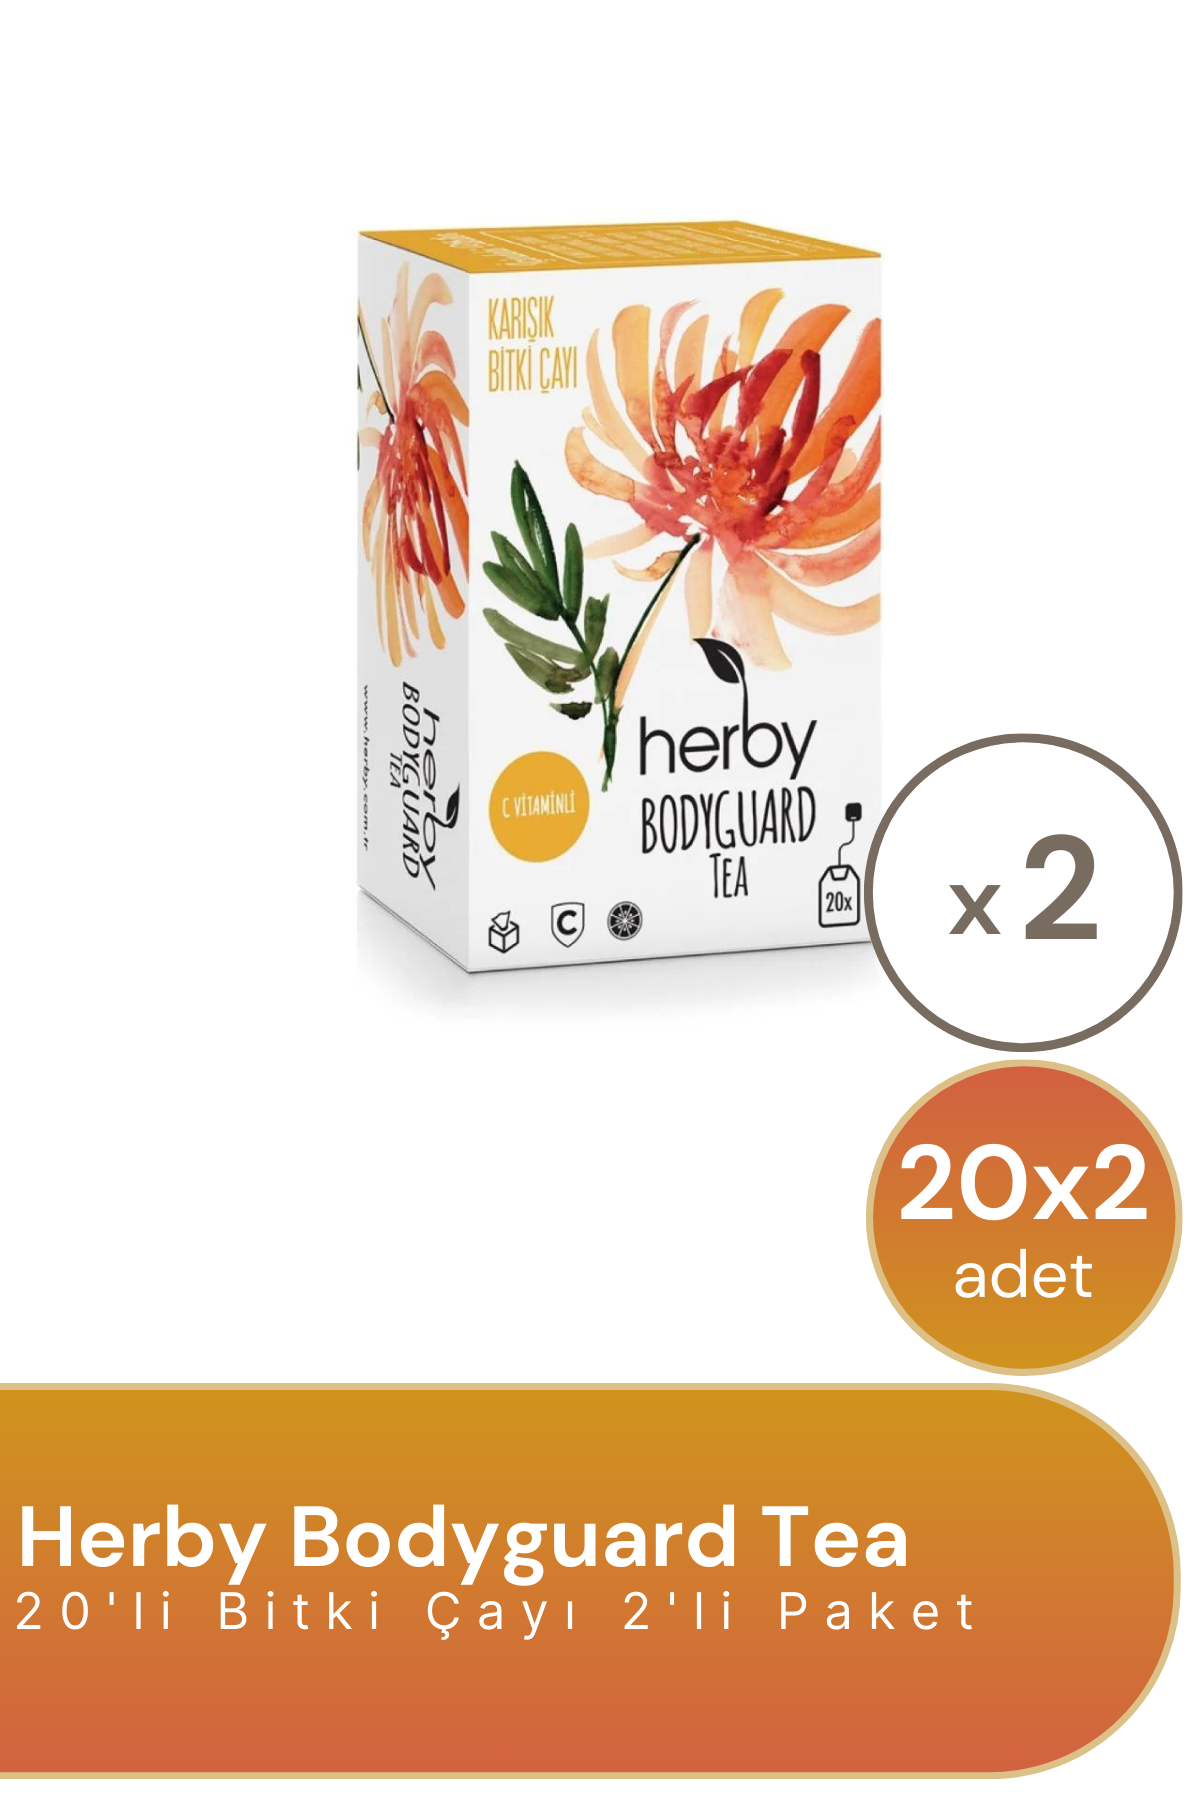 Herby Bodyguard Tea 20'li Bitki Çayı 2'li Paket